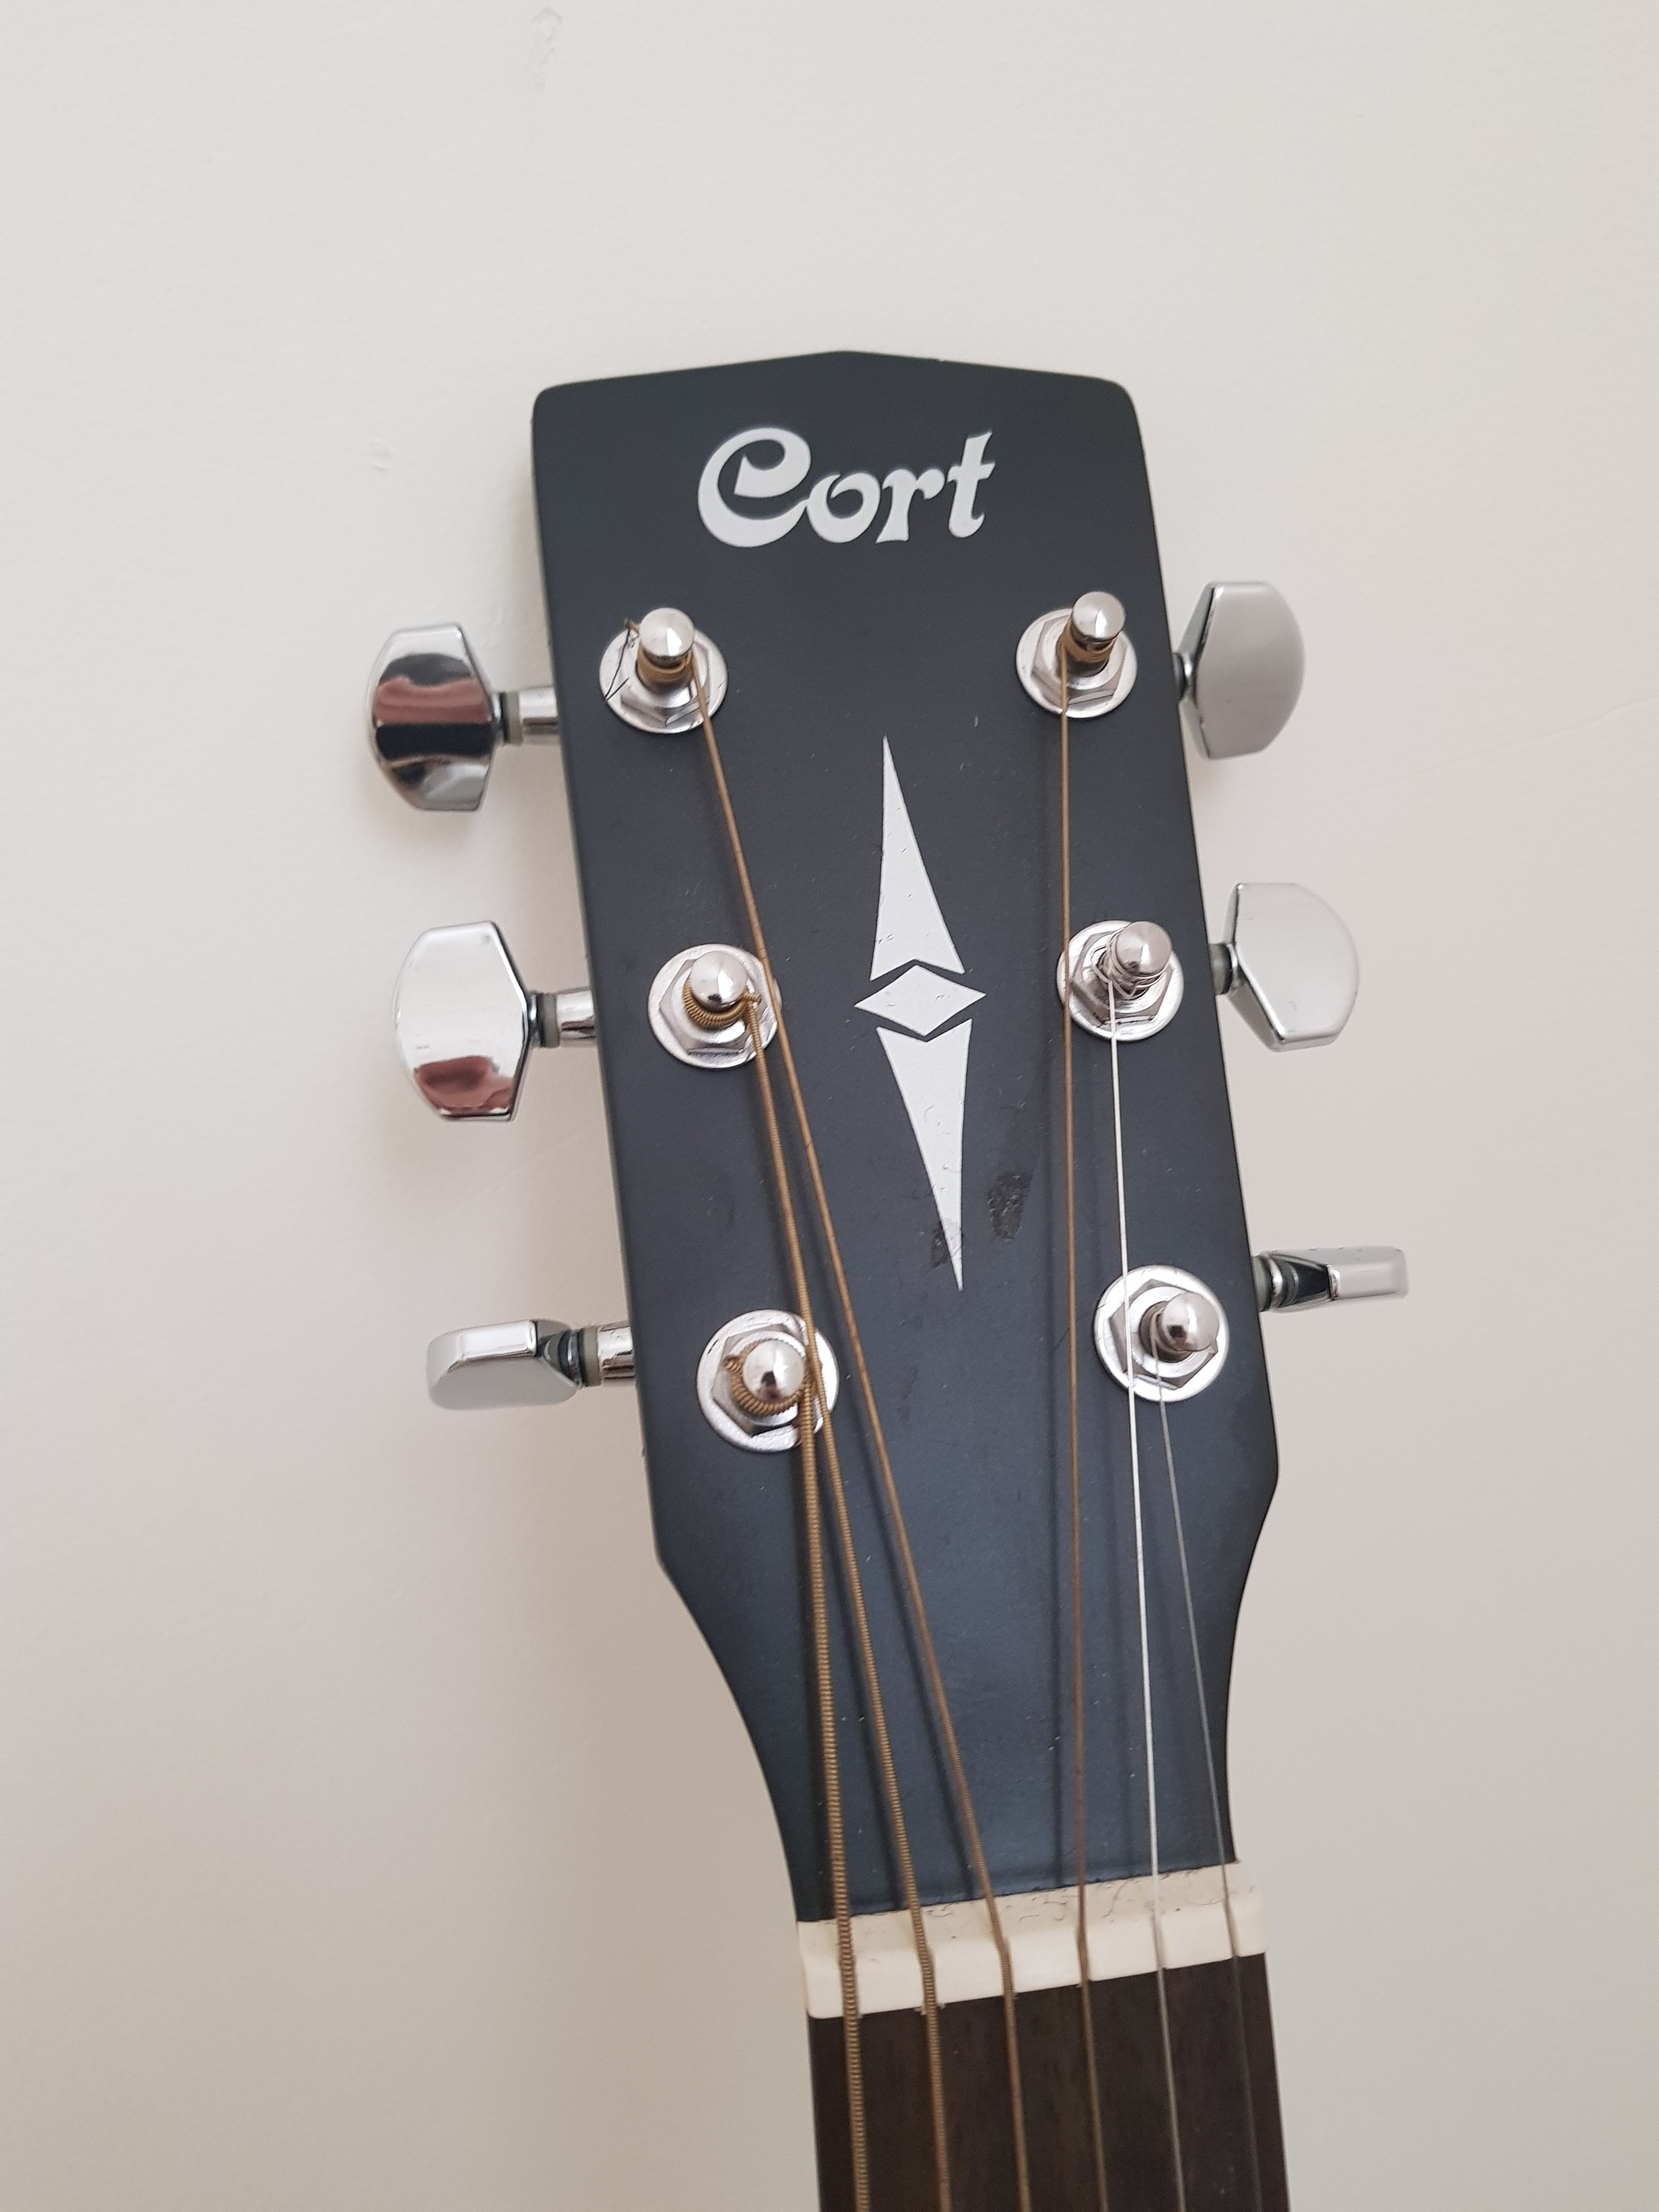 תמונה 2 ,גיטרה אקוסטית  למכירה בביתר עילית כלי נגינה  גיטרה אקוסטית